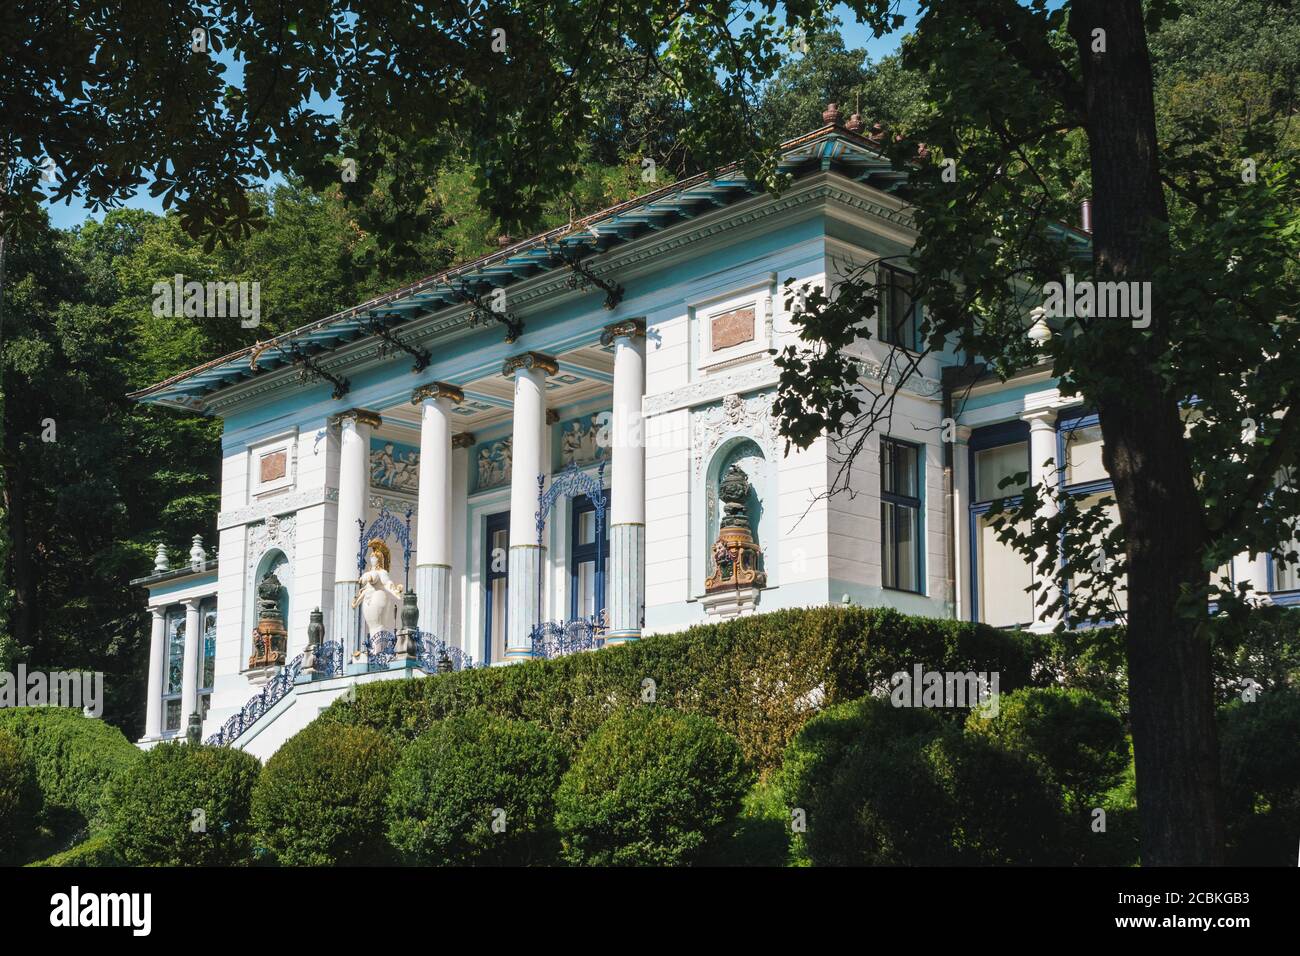 Vienne, Autriche - août 8 2020 : Villa Otto Wagner avec le musée Ernst Fuchs, un bâtiment Art nouveau, également appelé Villa Ben Tieber. Banque D'Images